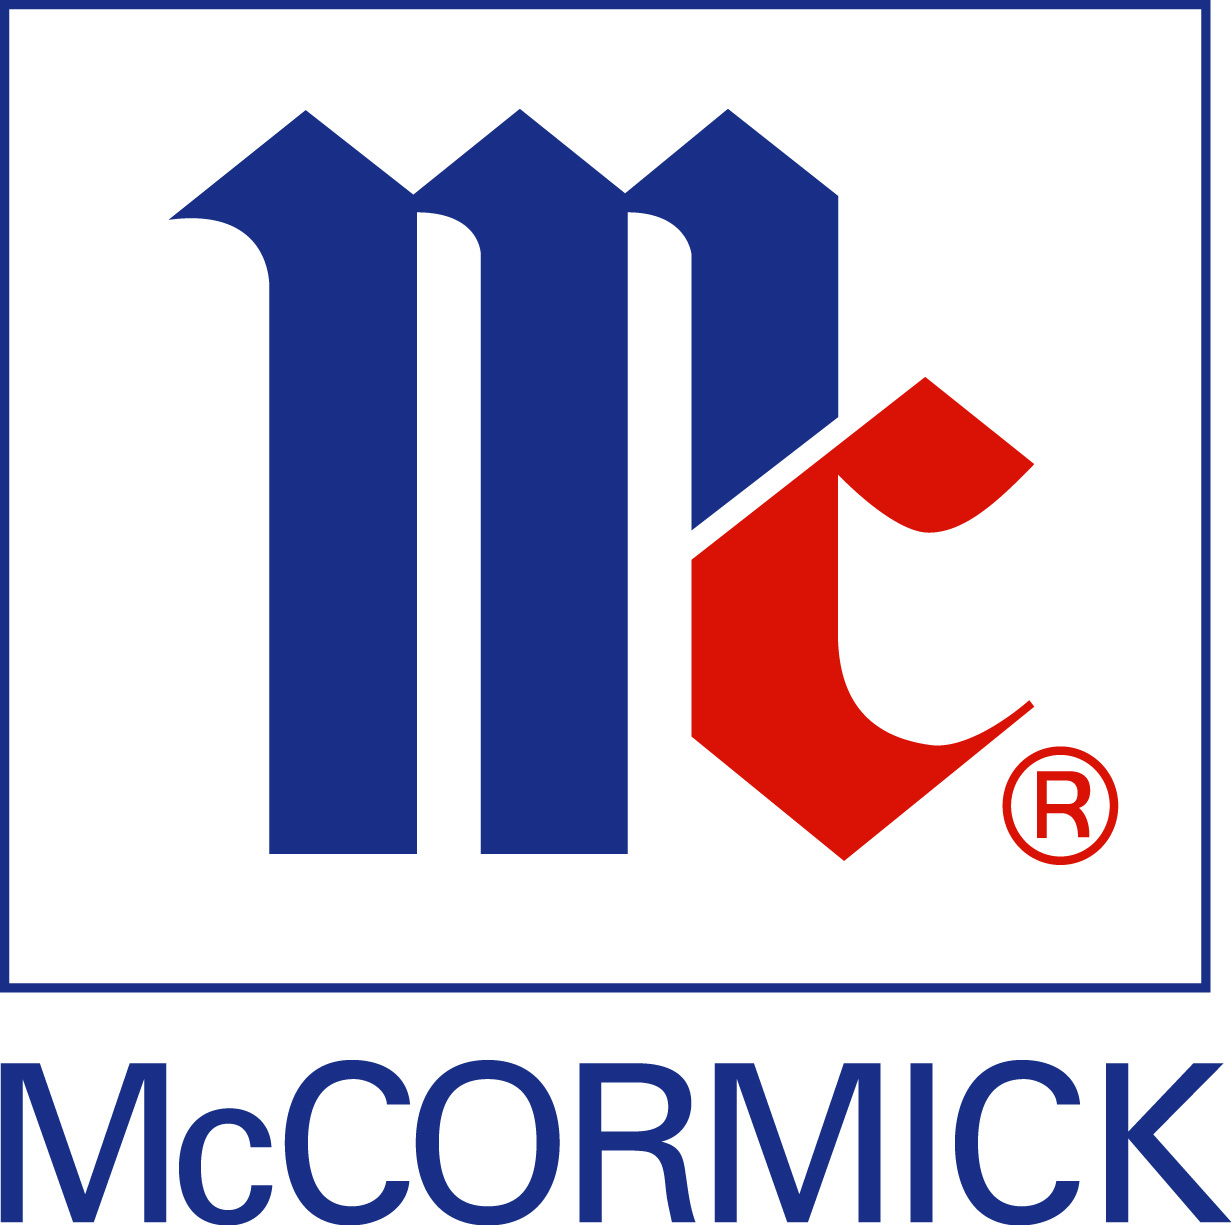 McCormick finalizuje przejęcie spożywczej części Reckitt Benckiser